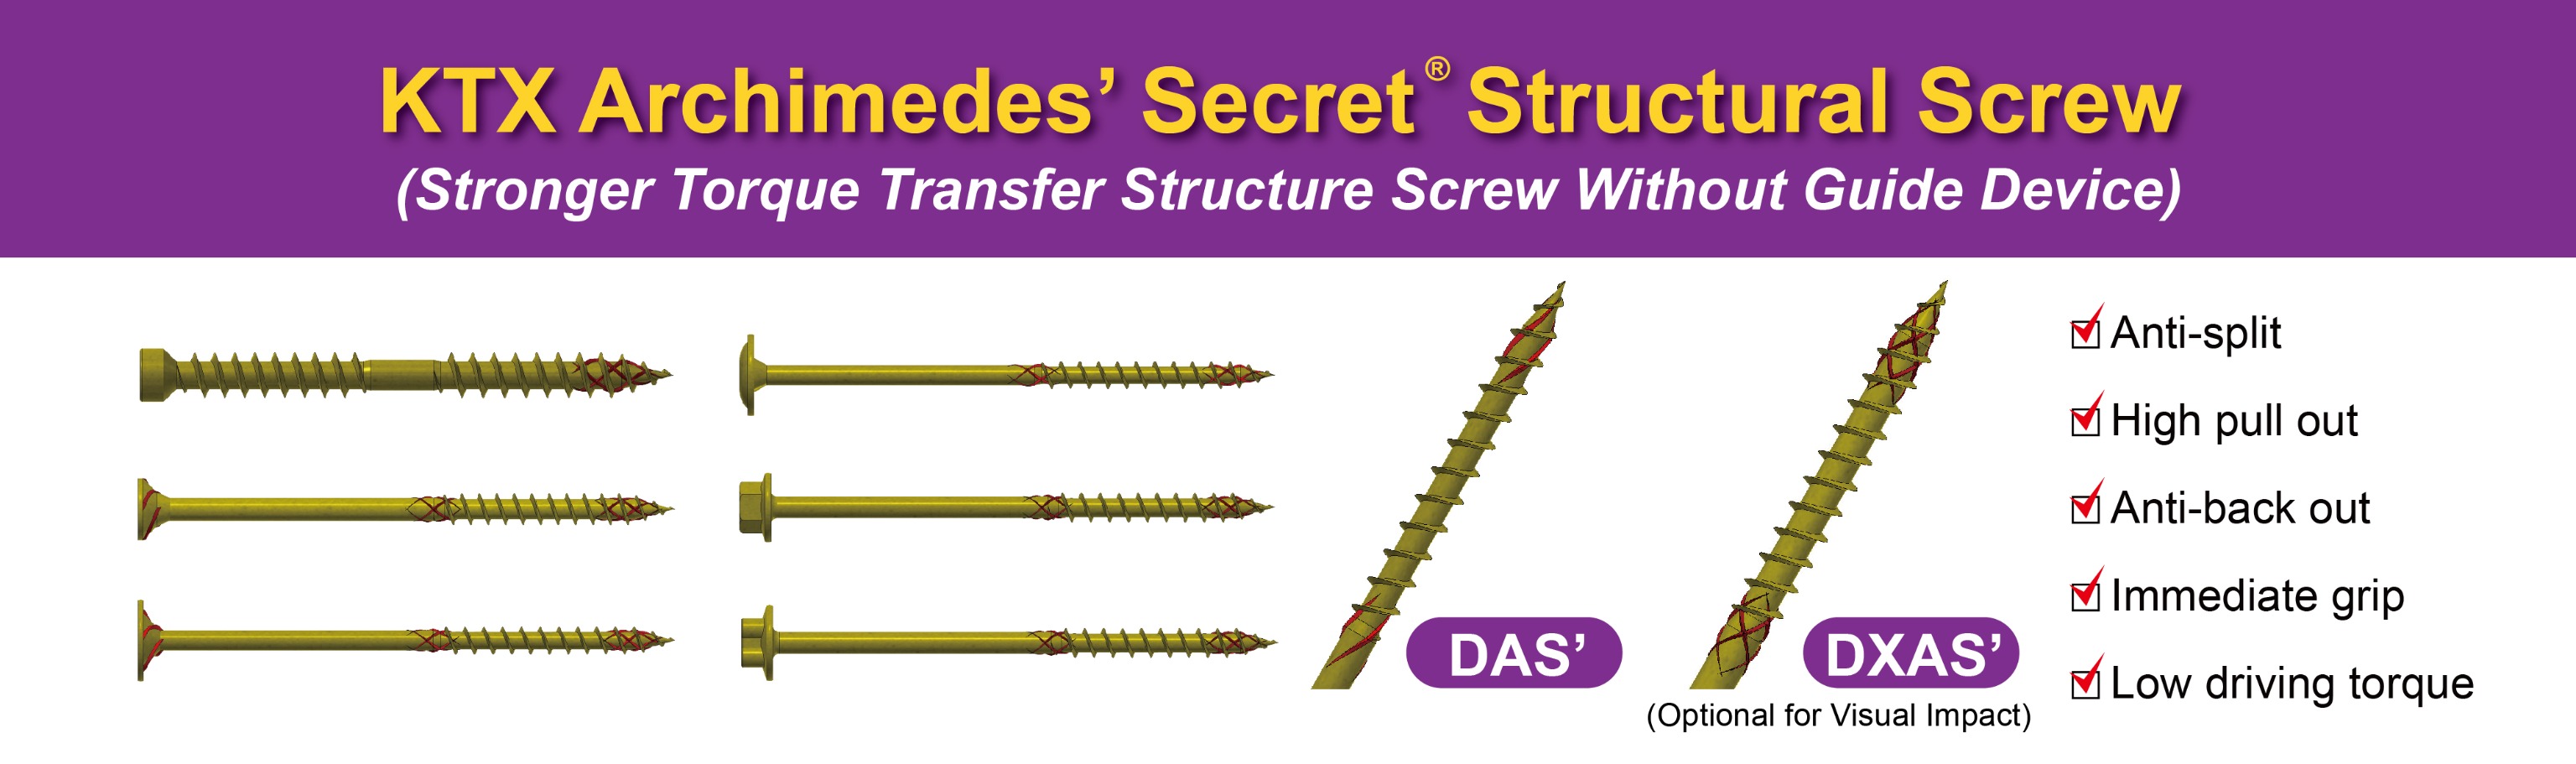 KTX Archimedes' Secret Structural Screw